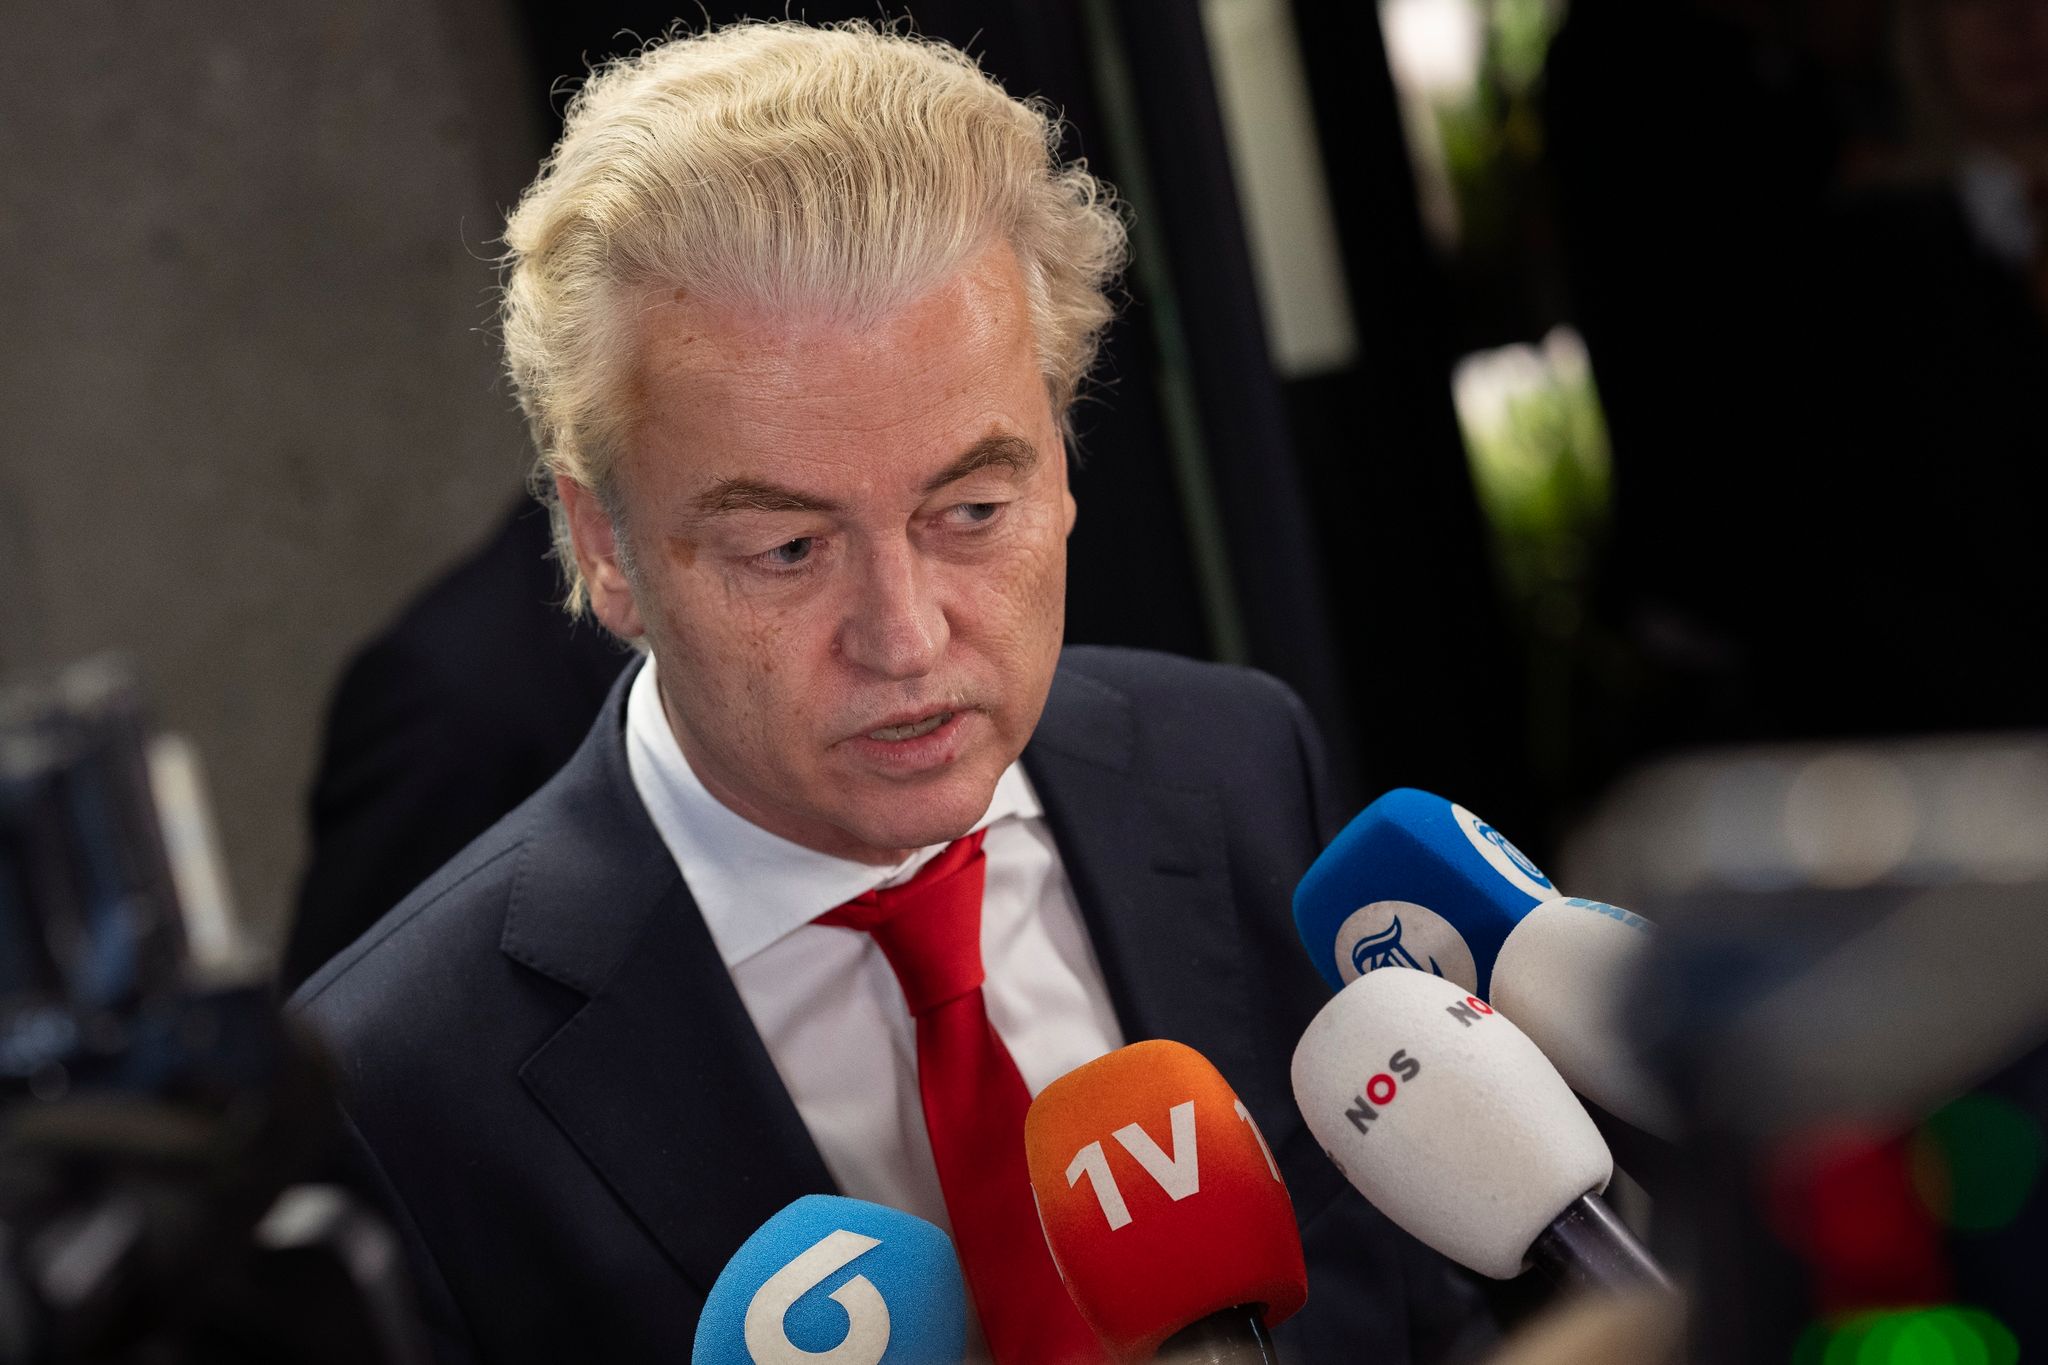 Geert Wilders ist Vorsitzender der rechtsextremen Partei PVV (Partei für die Freiheit).